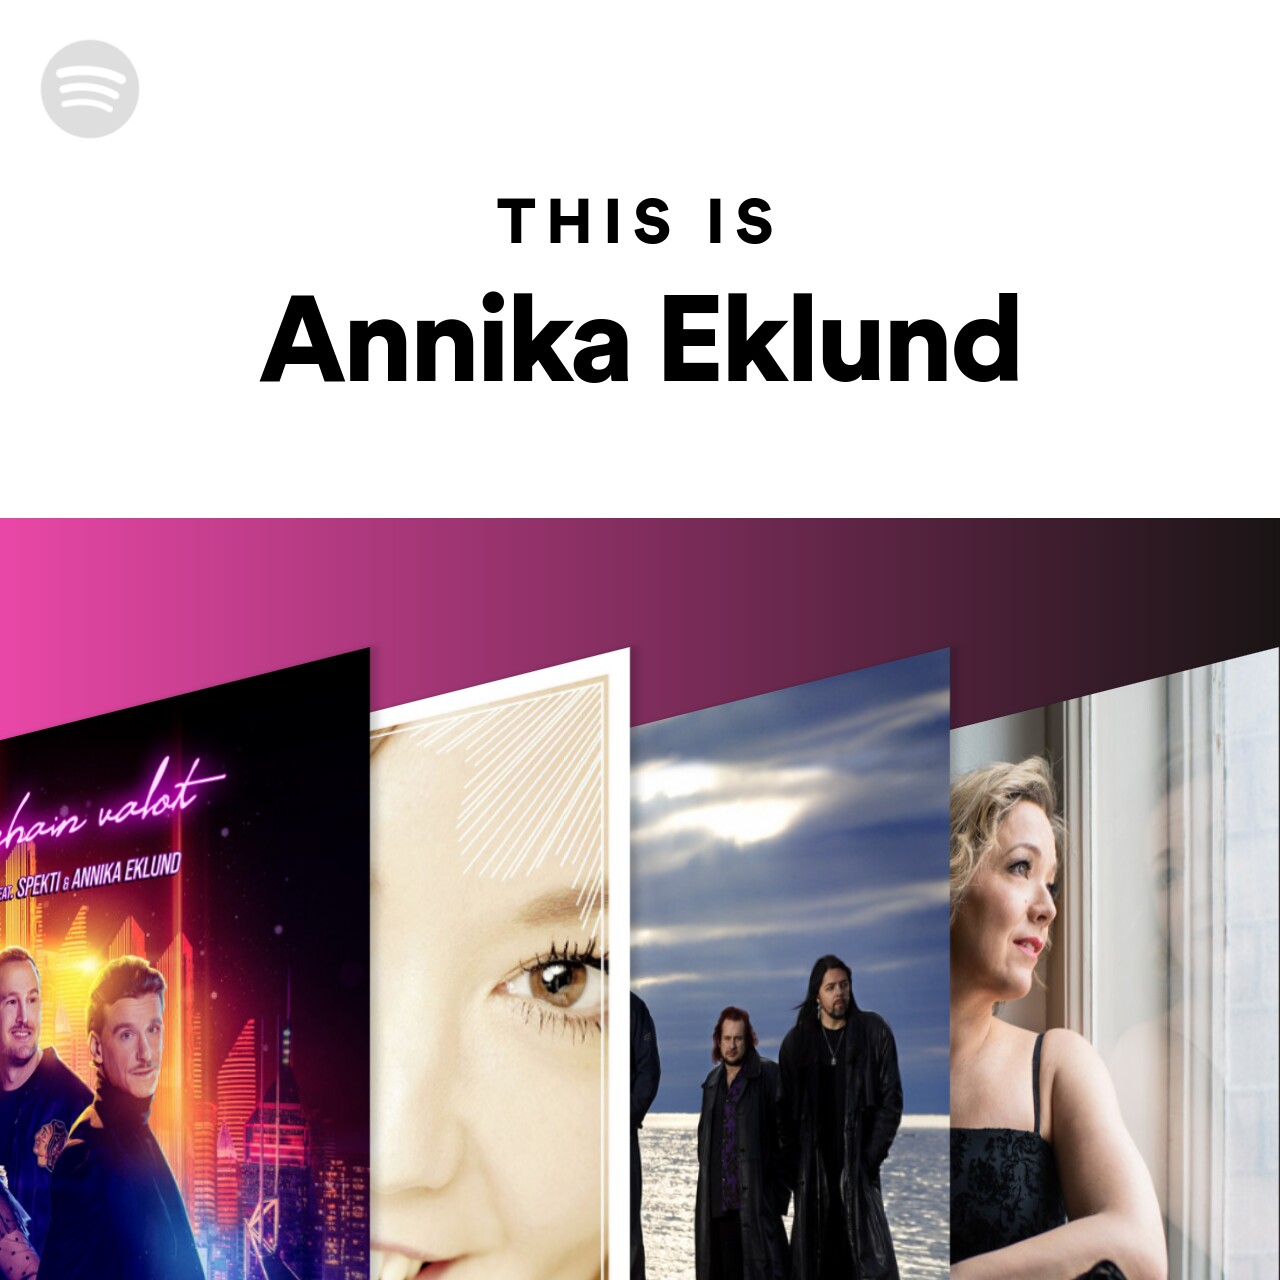 This Is Annika Eklund